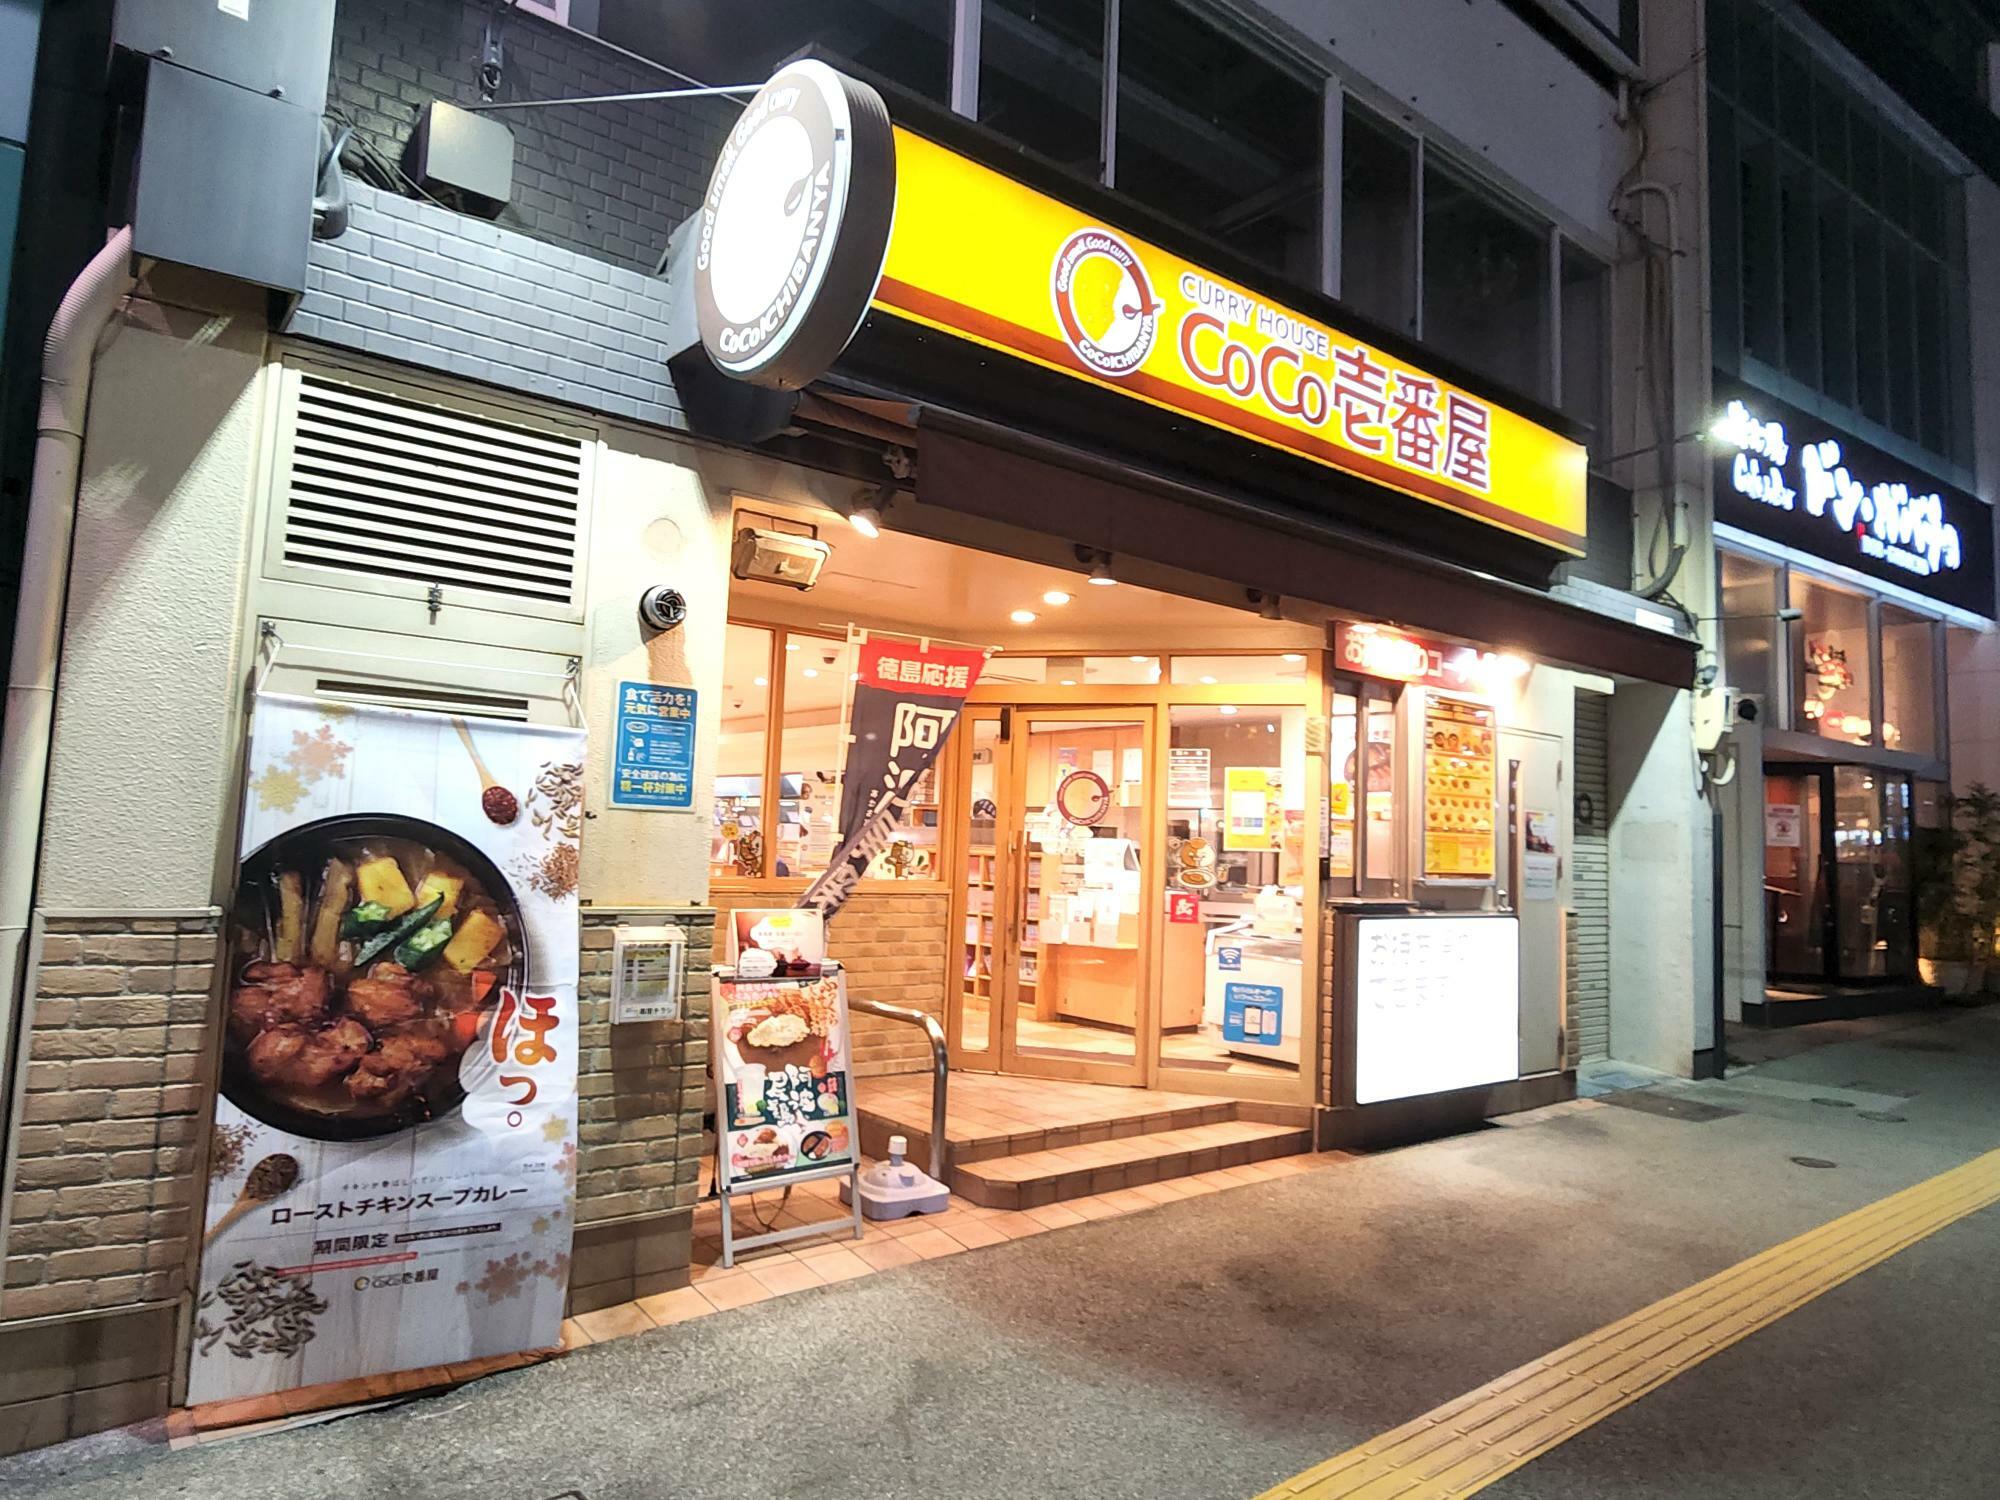 「カレーハウス CoCo壱番屋 JR徳島駅前店」店舗外観。